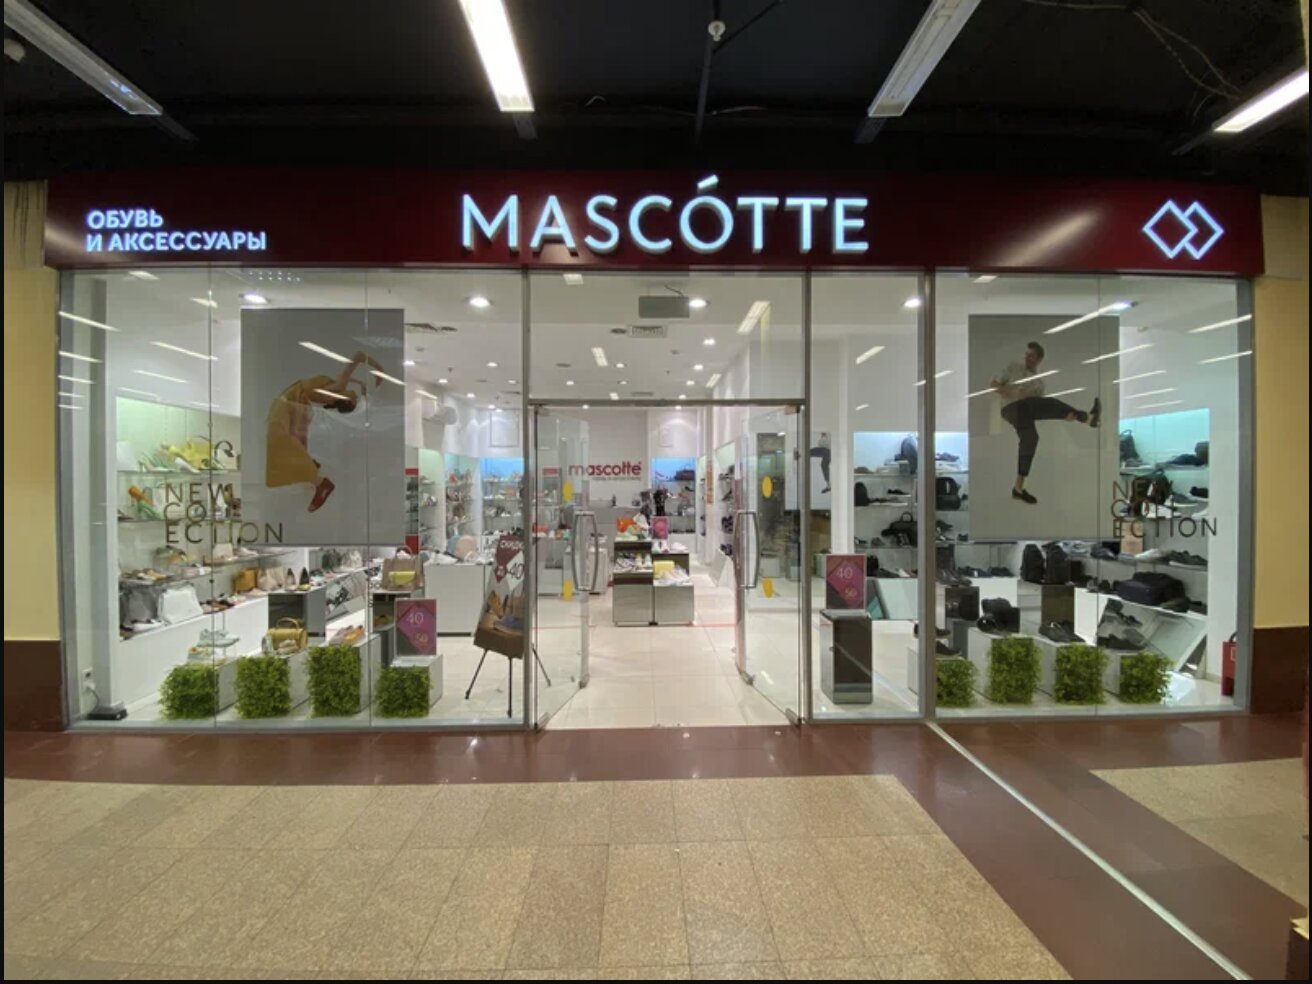 Обувной магазин Mascotte